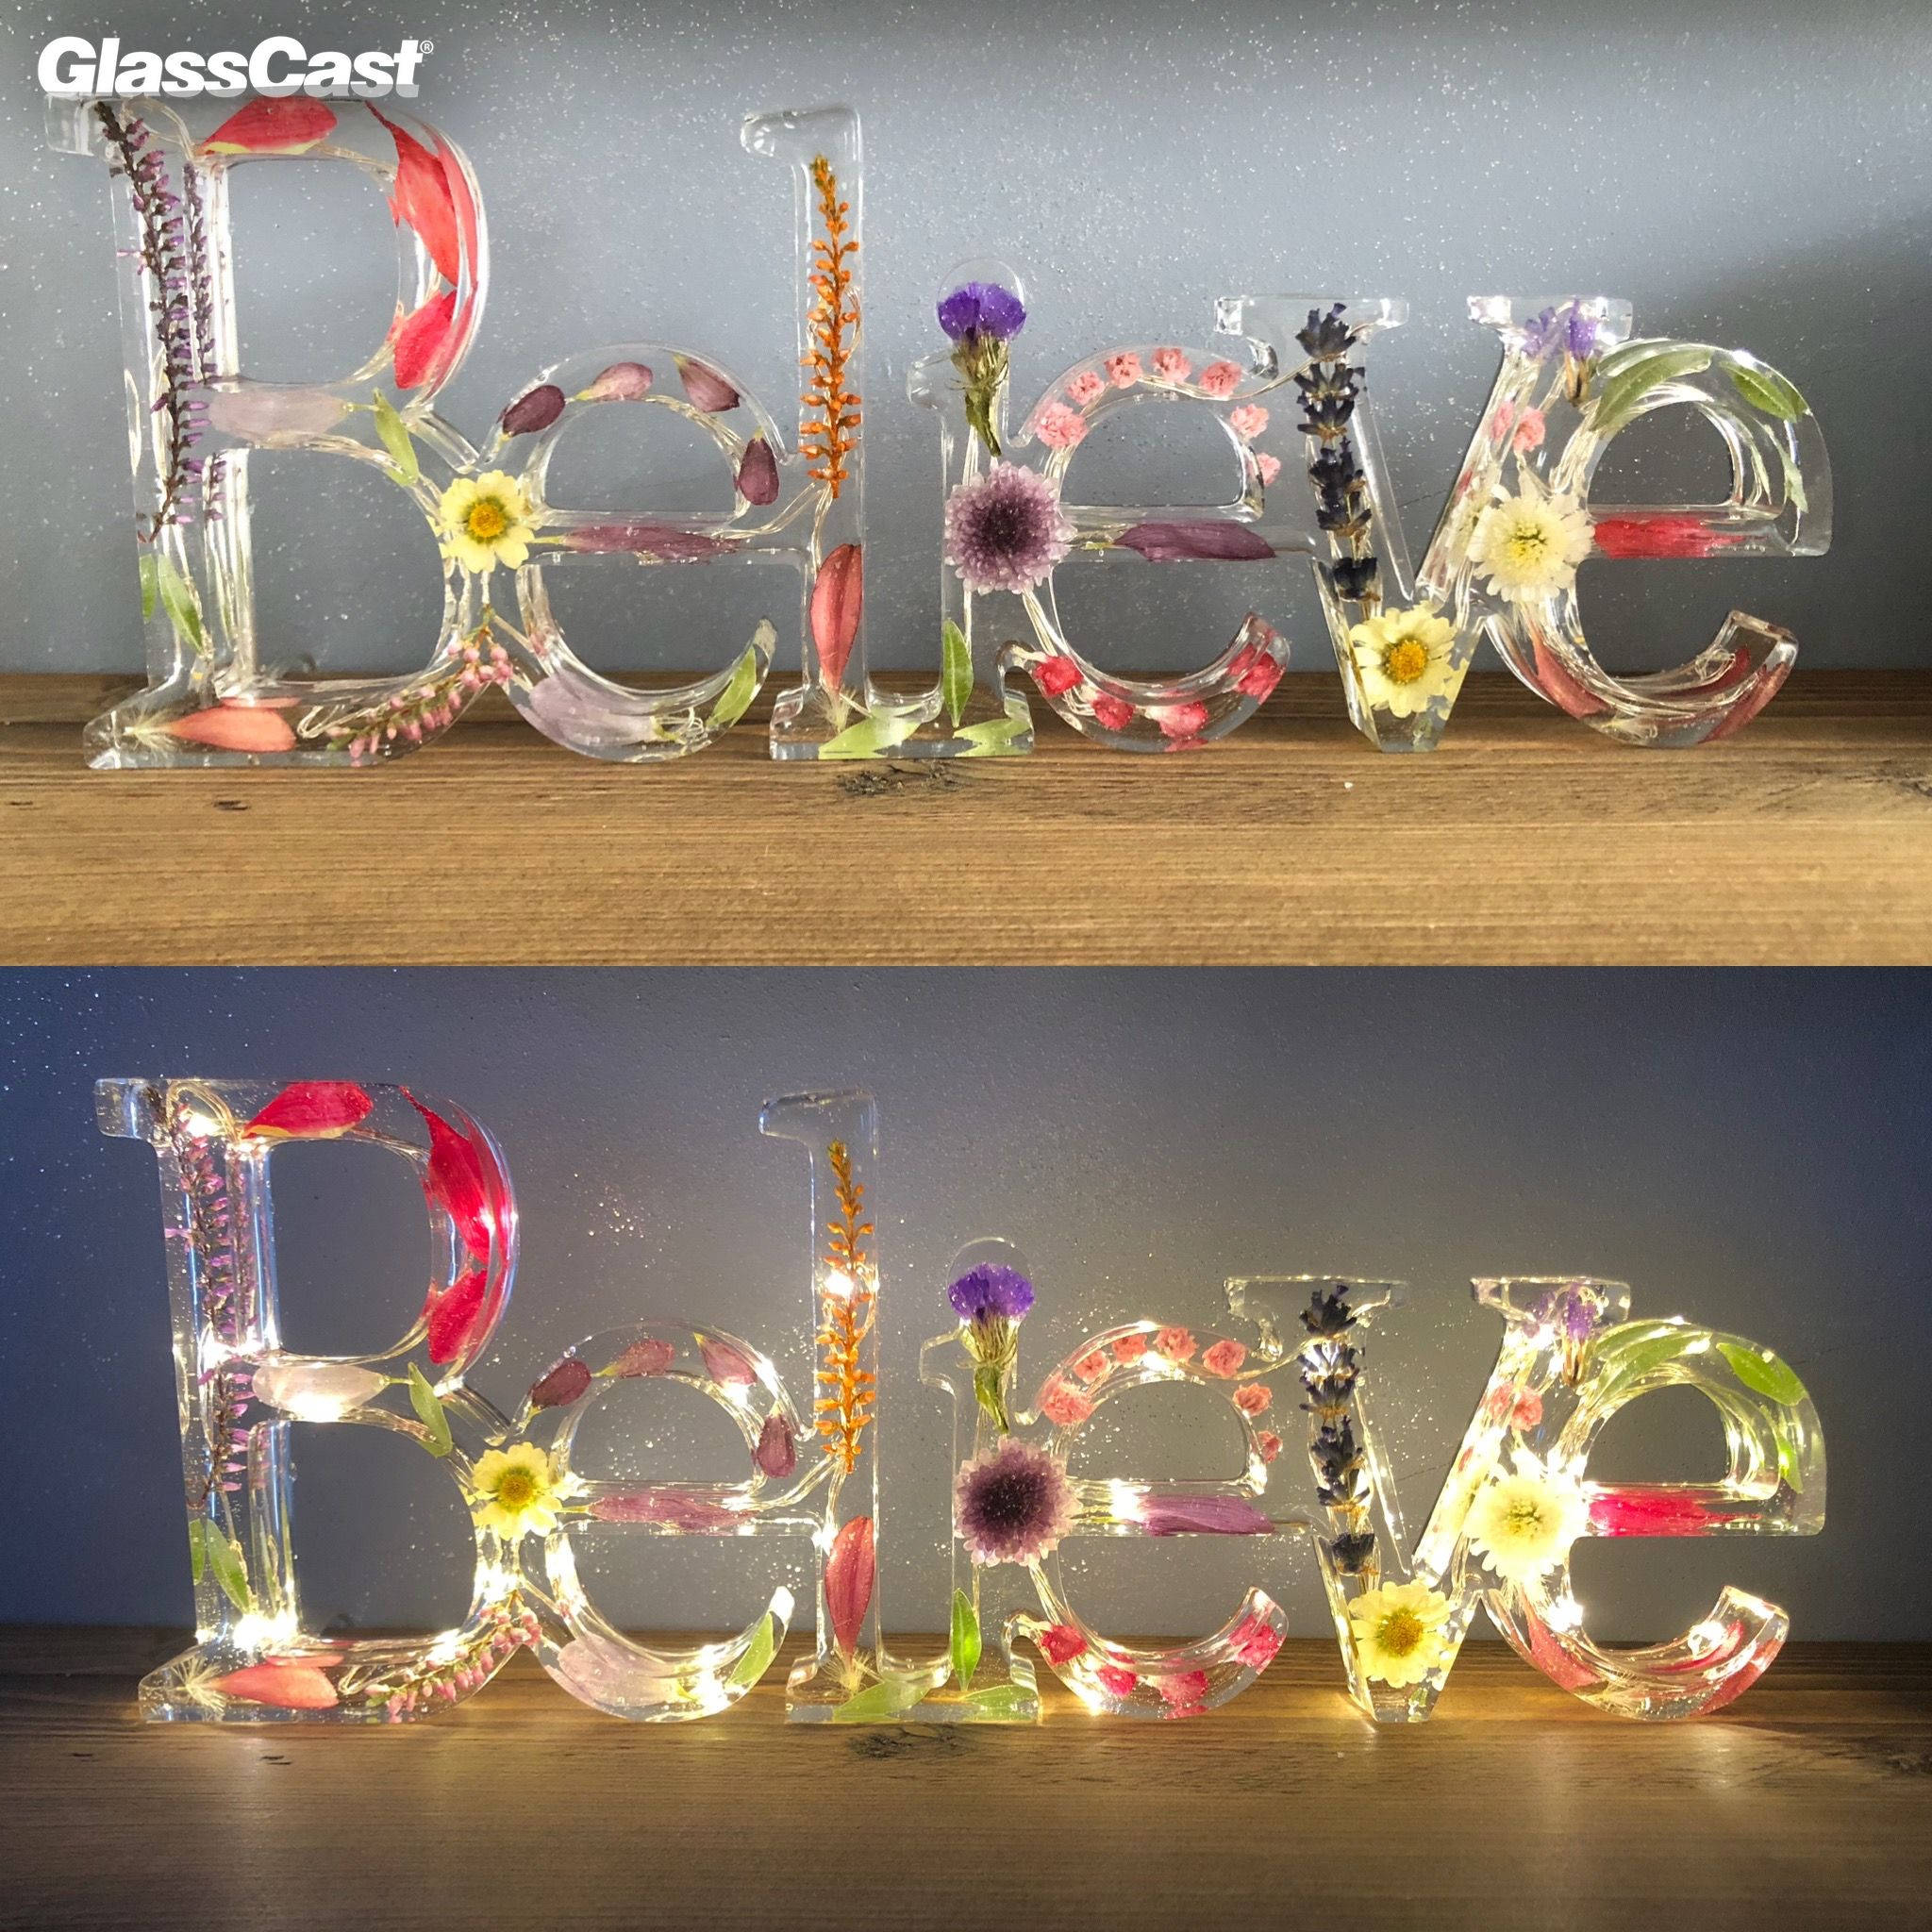 Wild Flower Resin Castings - GlassCast